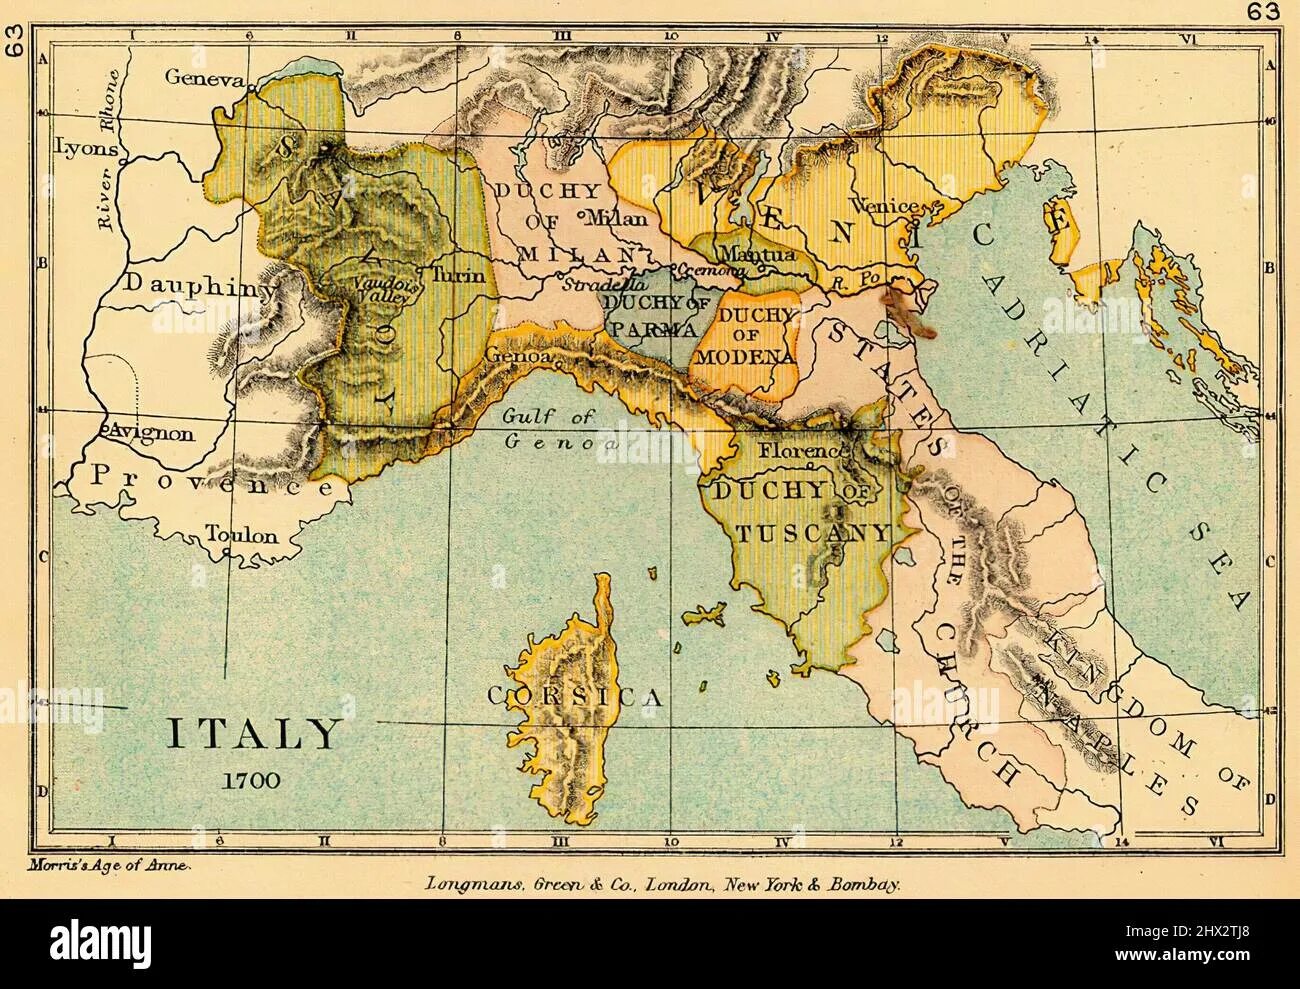 1700 период. Карта Италии 1700. Италия 1700 года. Италия в 1700 году карта. Карта Италии 1600 год.